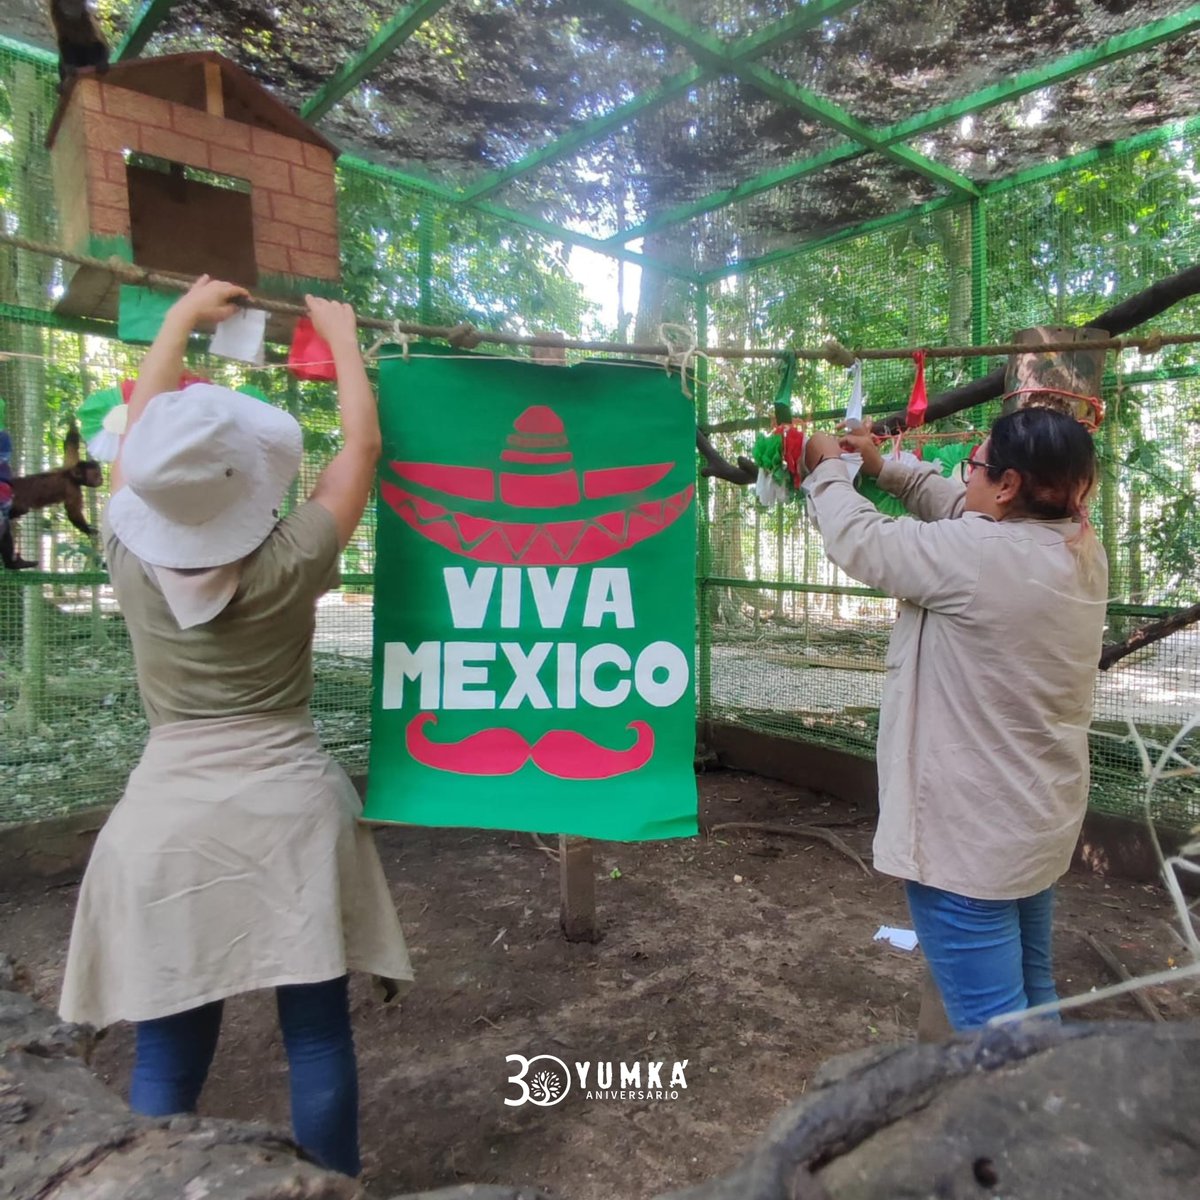 🇲🇽 🥳 Gracias al equipo de Bienestar Animal por realizar un divertido #enriquecimiento muy Mexicano, acciones encaminadas a promover la salud y el bienestar animal. 🐵 ¡Viva México!